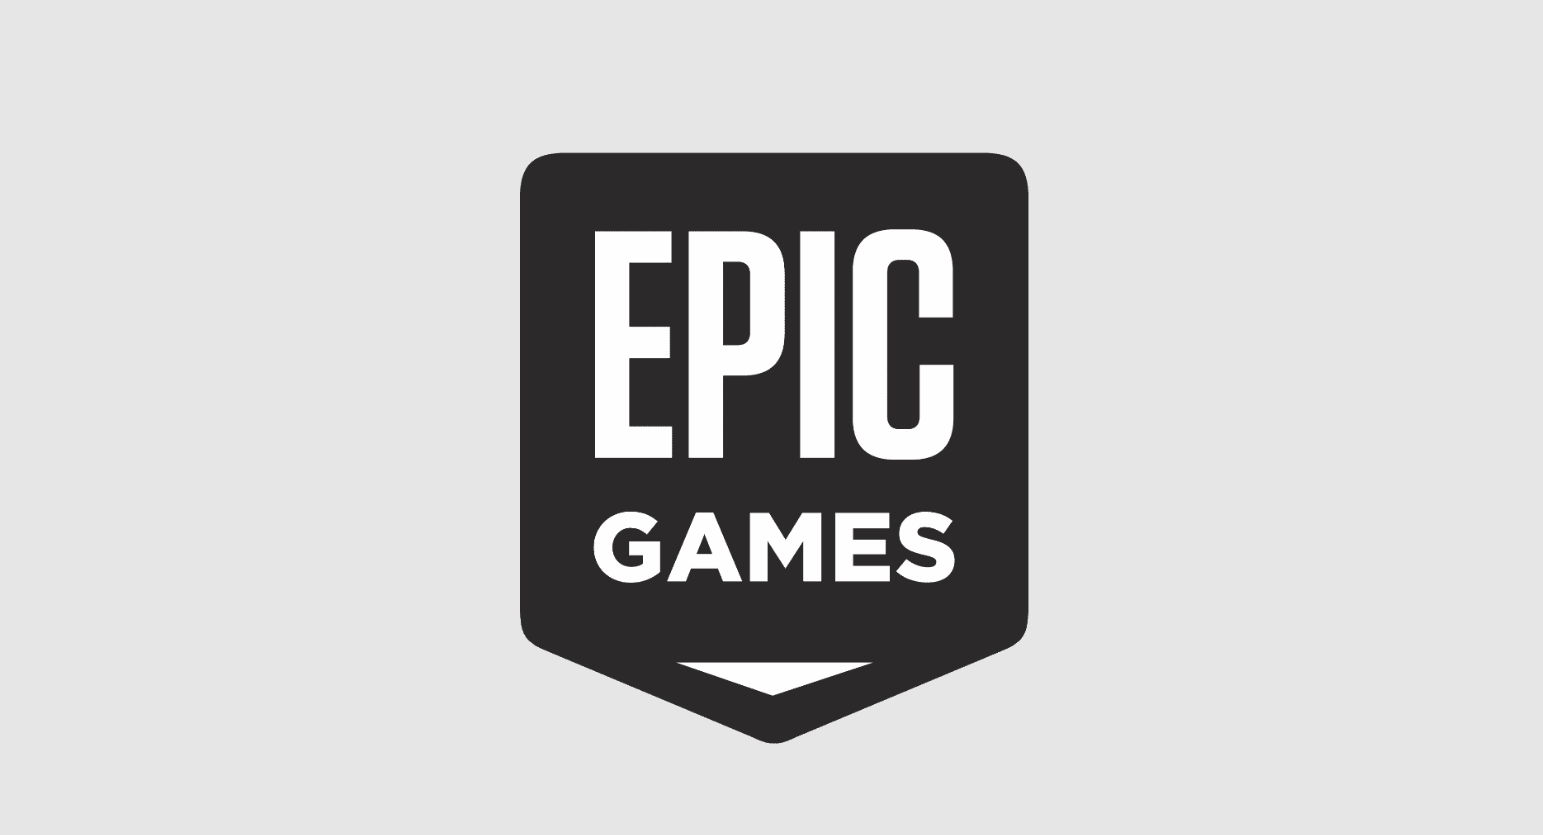 Epicgames.com